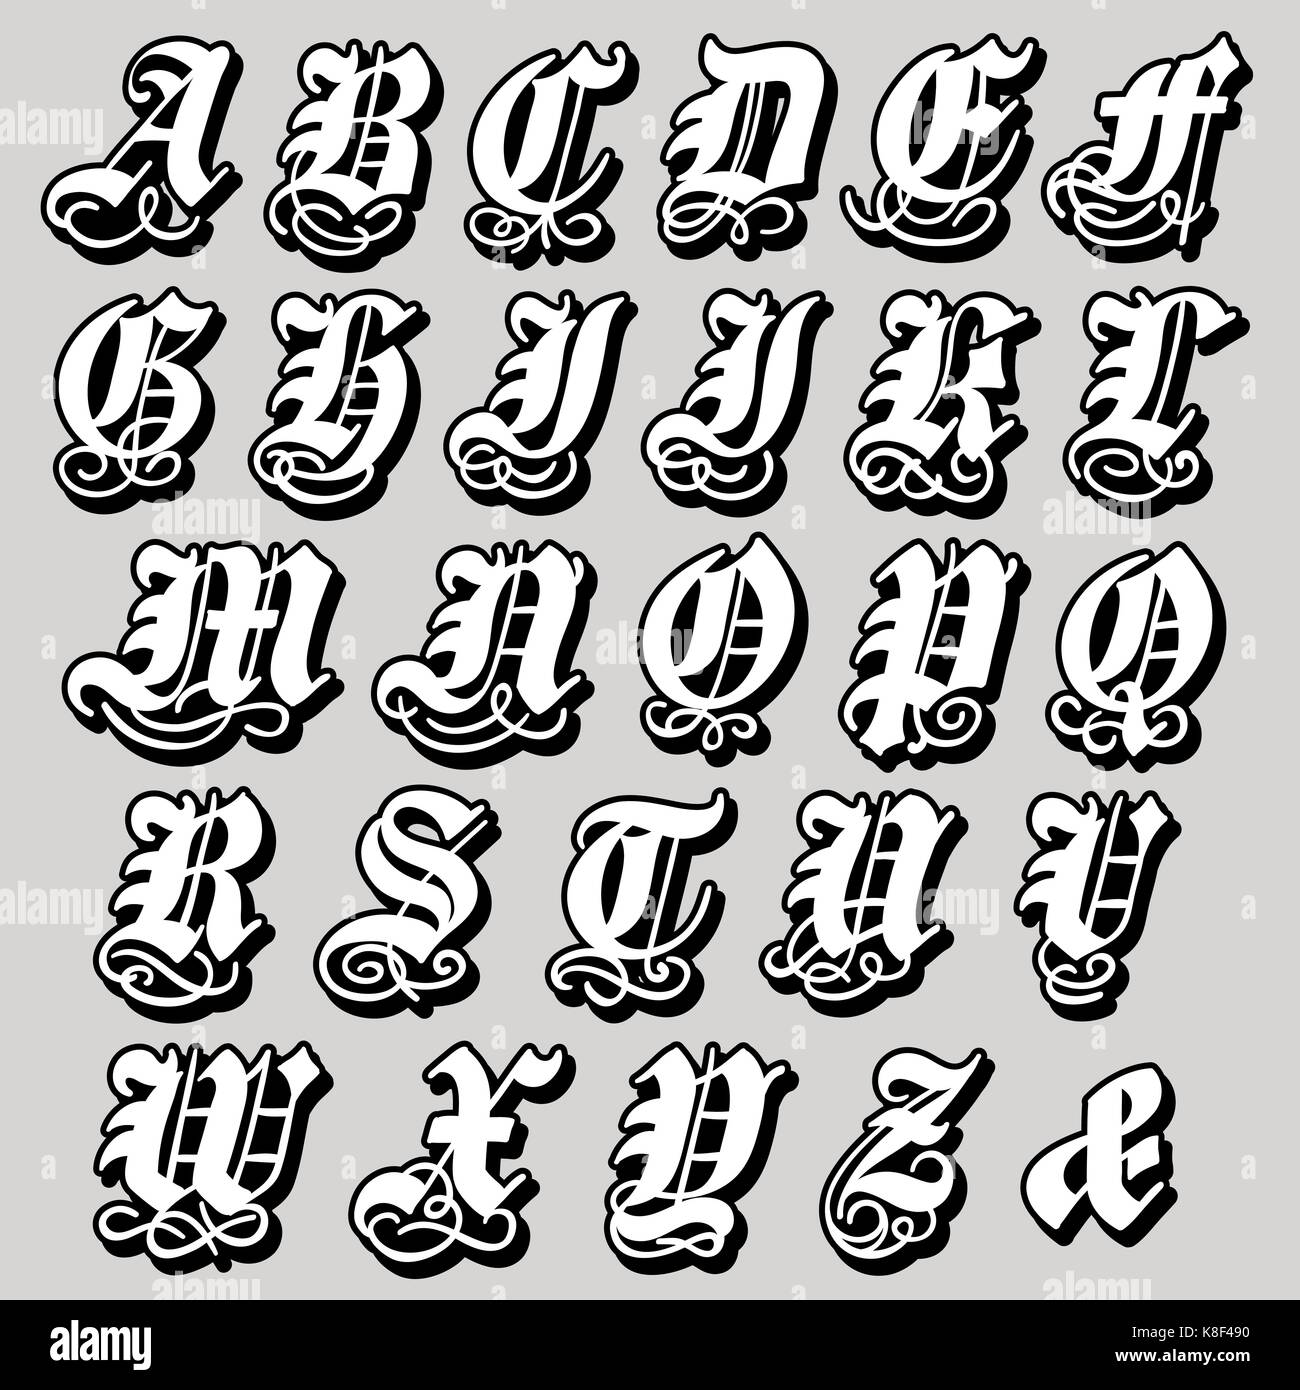 Majuscule complète dans un alphabet gothique noire doodle avec tourbillons et ornementales s'épanouit, vector illustration isolé sur fond blanc Illustration de Vecteur